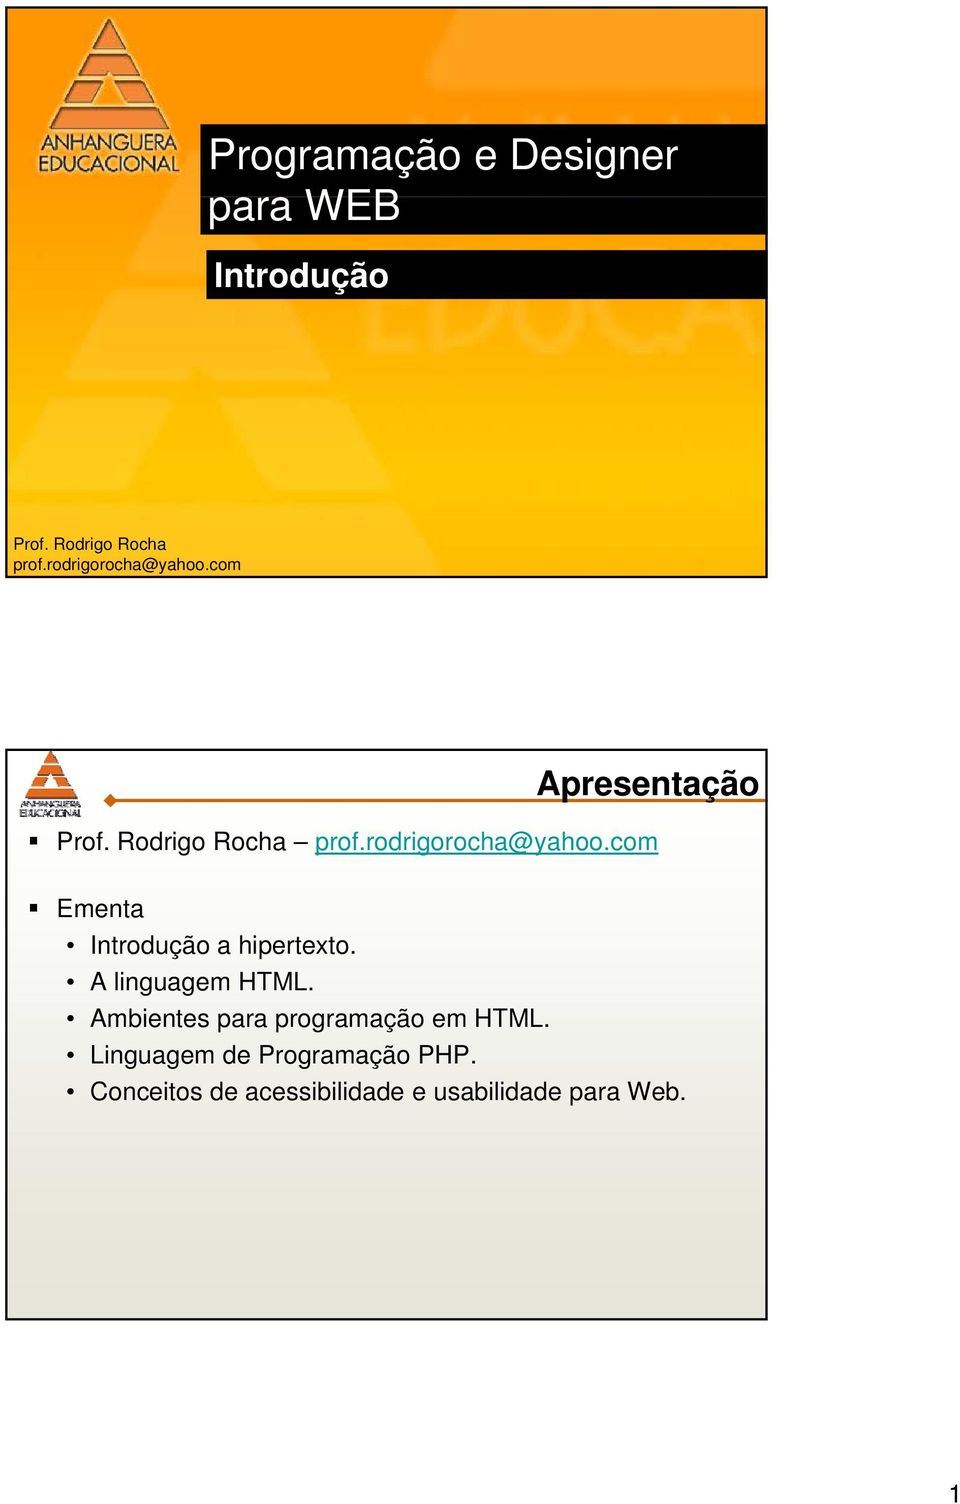 A linguagem HTML. Ambientes para programação em HTML. Linguagem de Programação PHP.